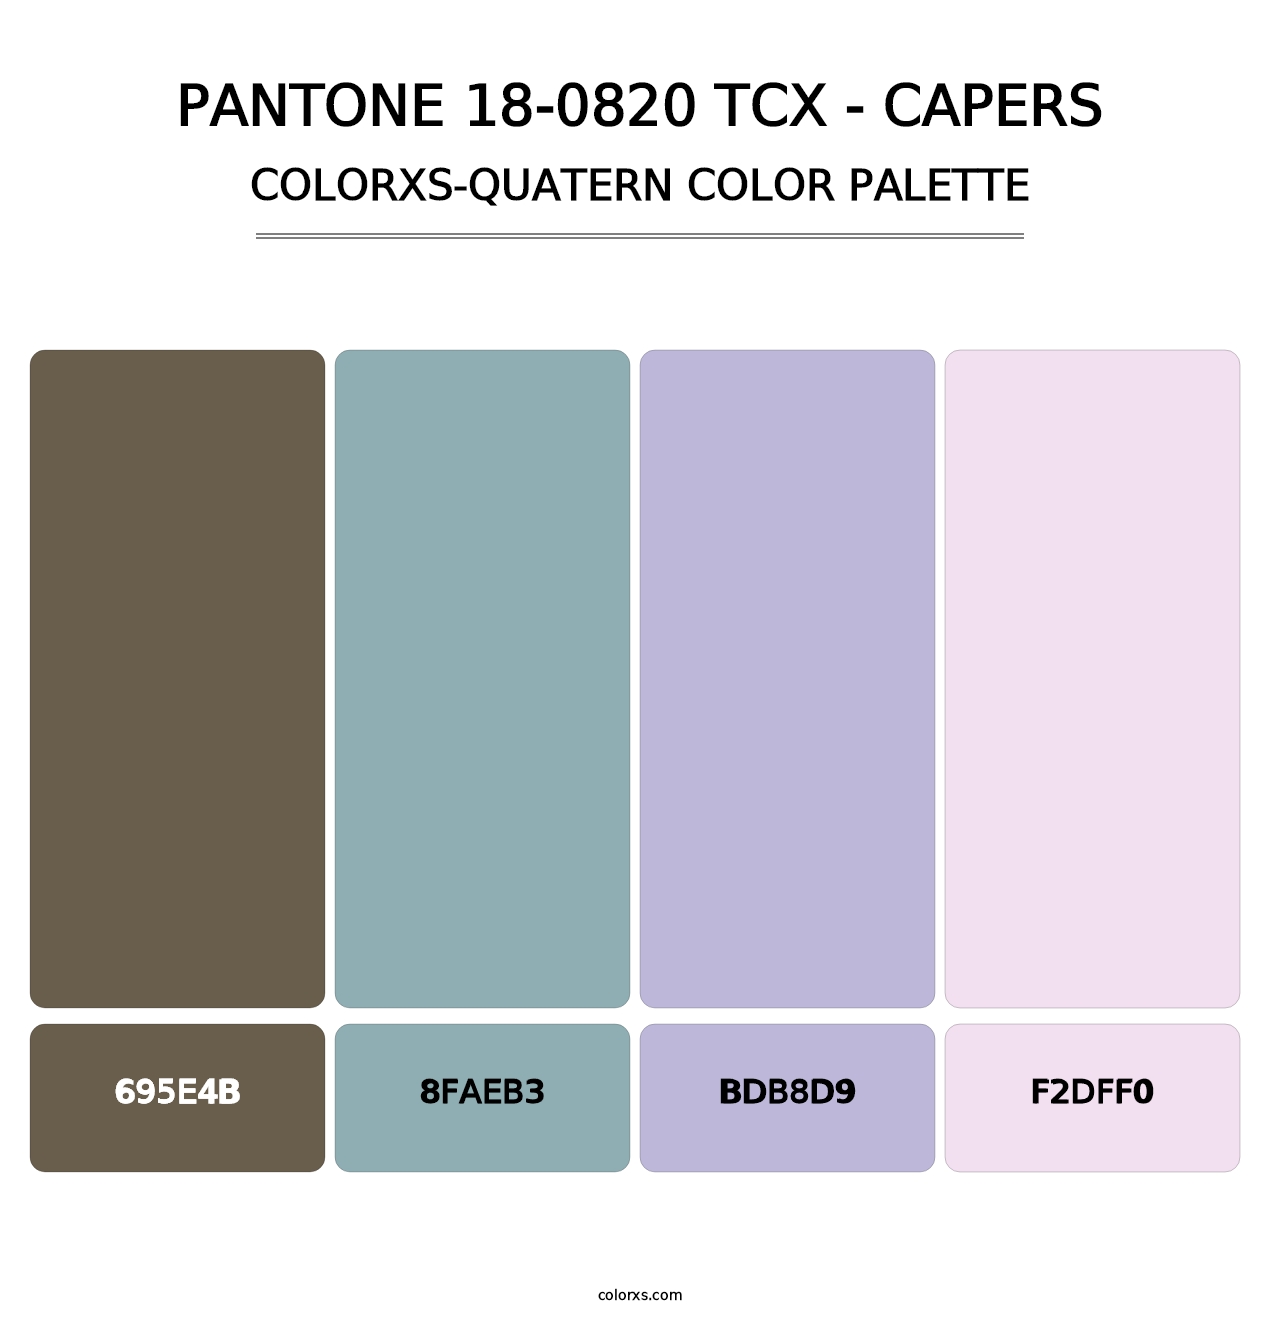 PANTONE 18-0820 TCX - Capers - Colorxs Quatern Palette